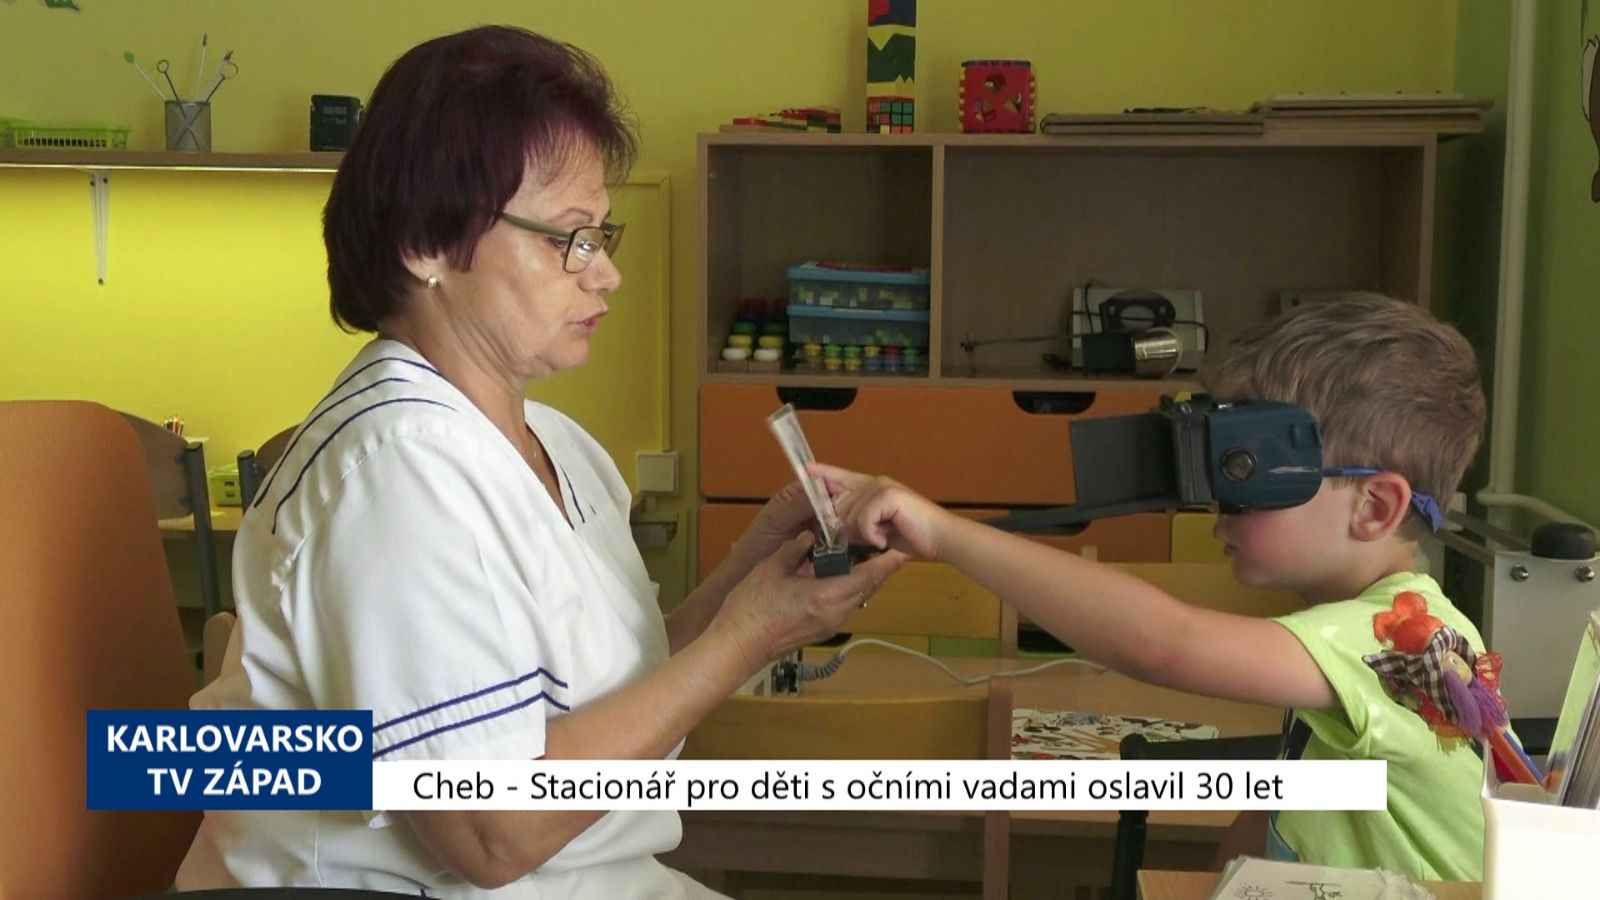 Cheb: Stacionář pro děti s očními vadami oslavil 30 let (TV Západ)